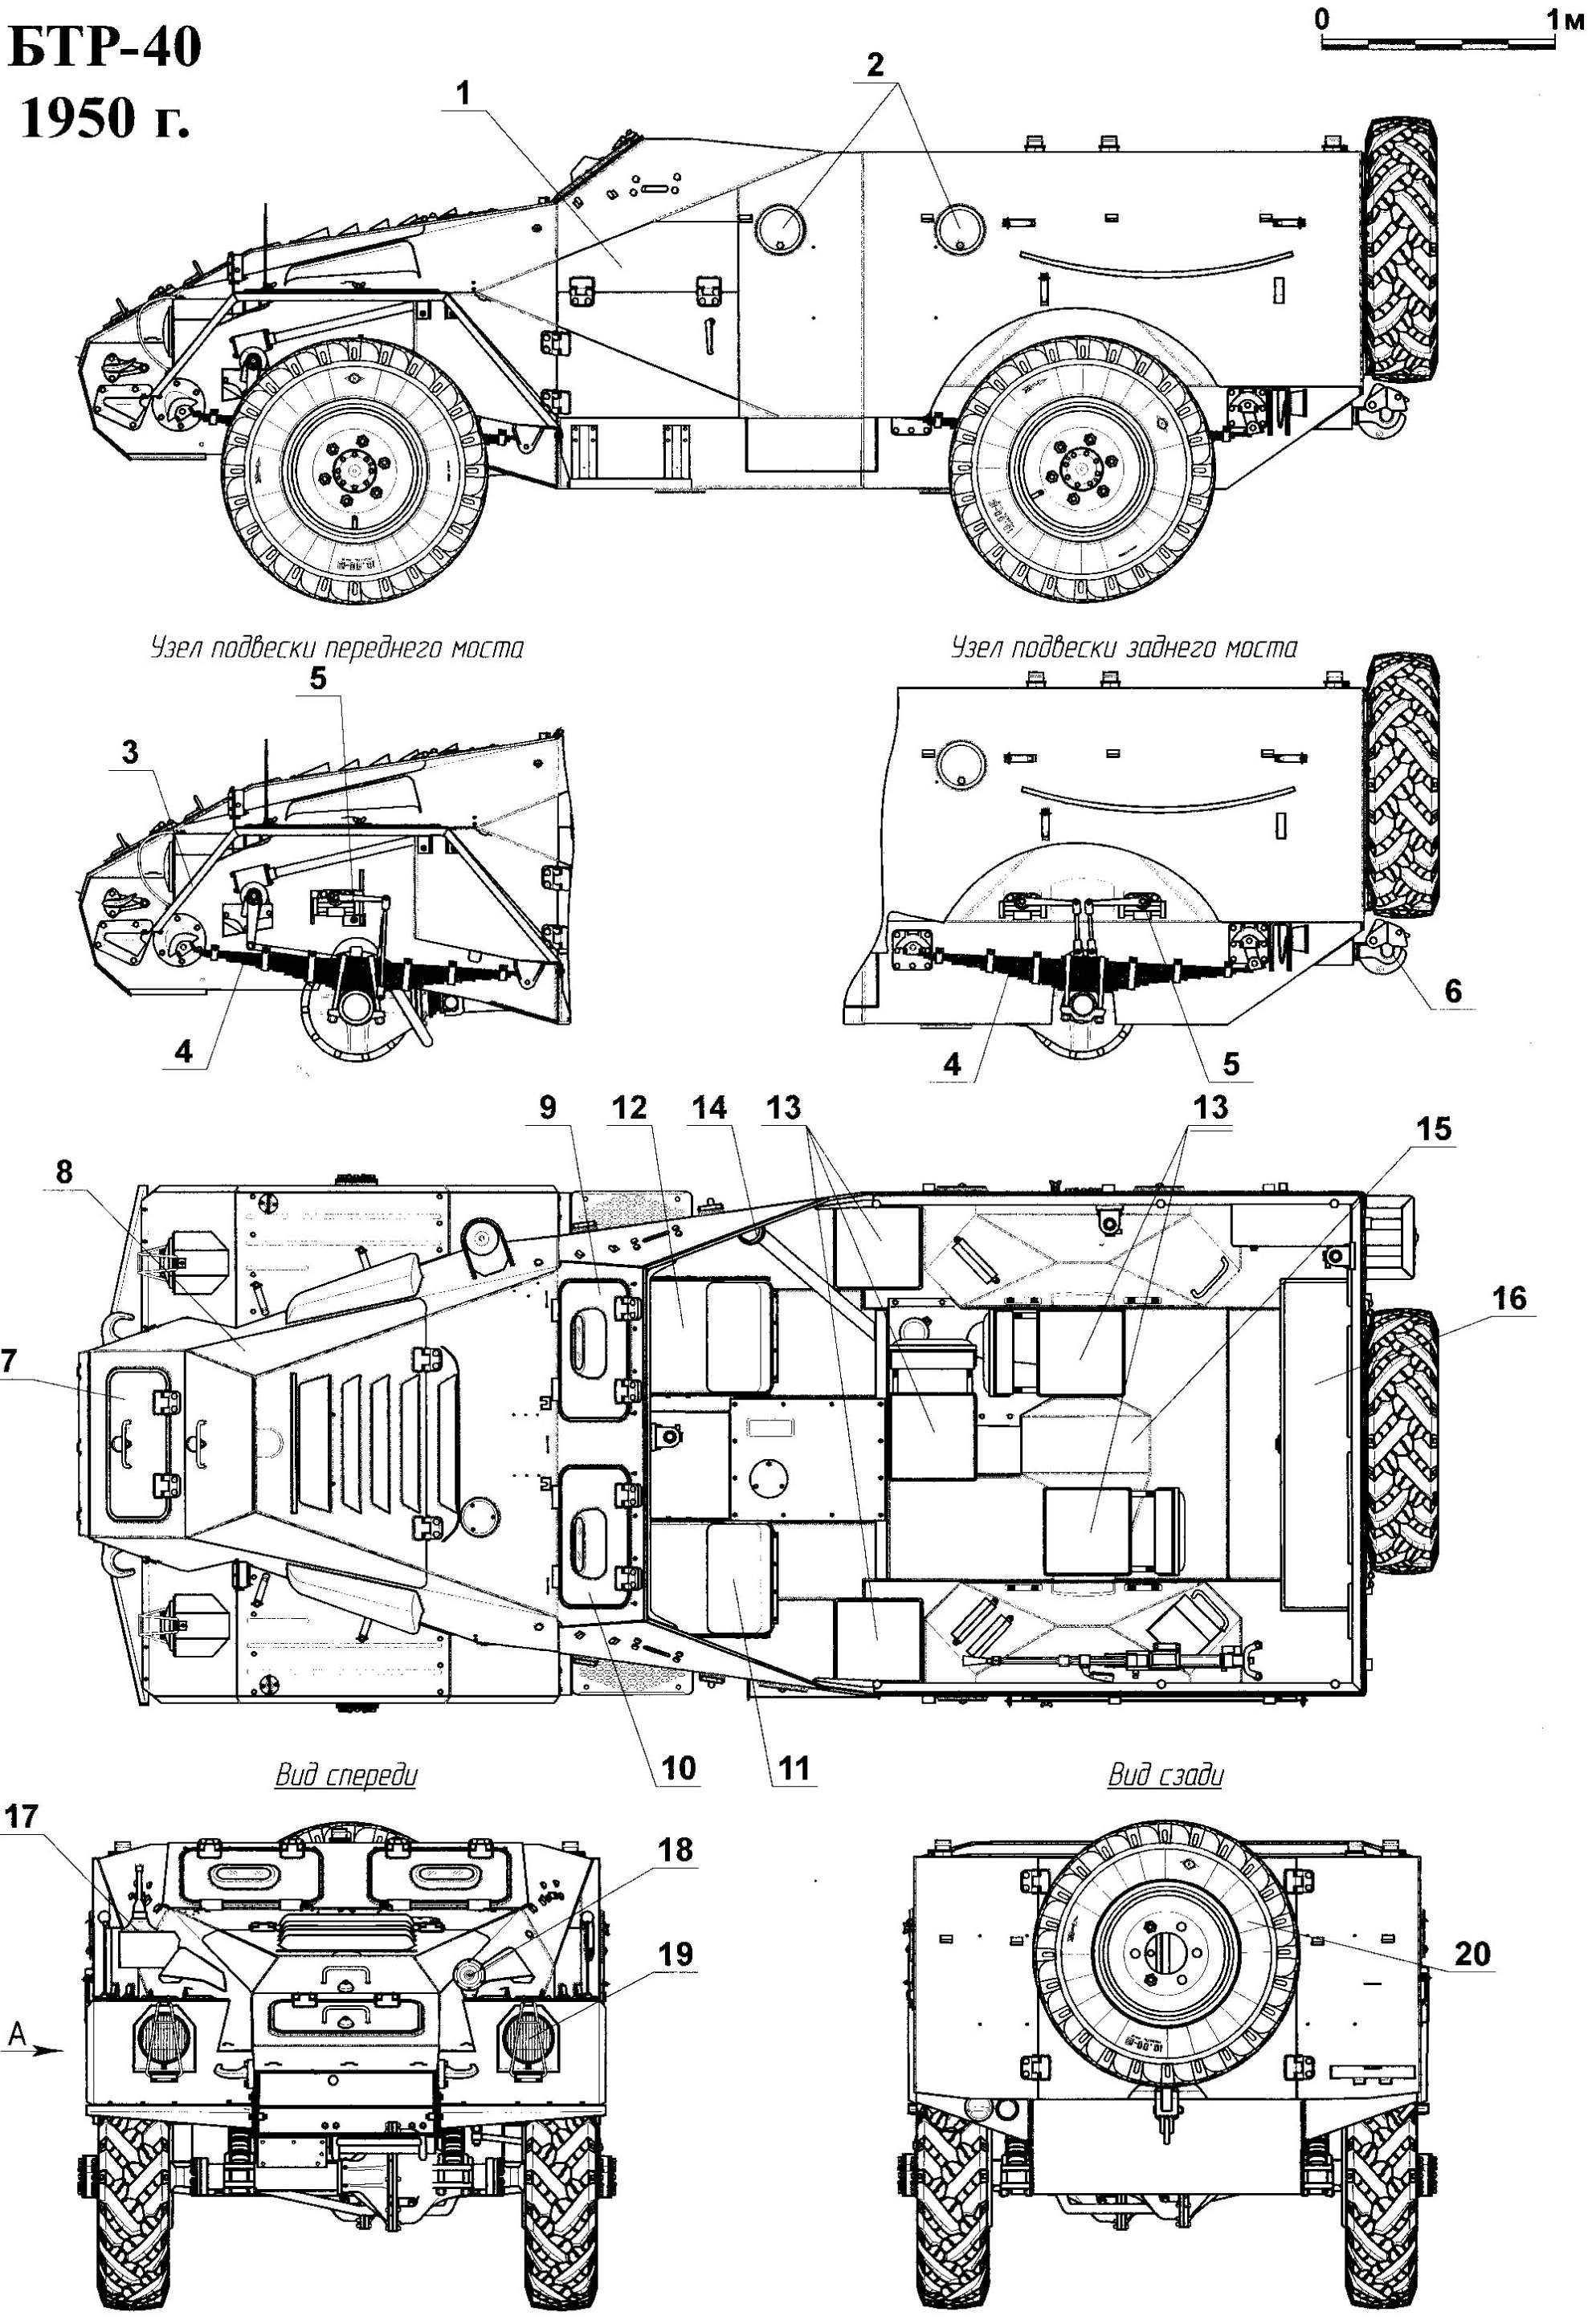 BTR-40_1950.jpg